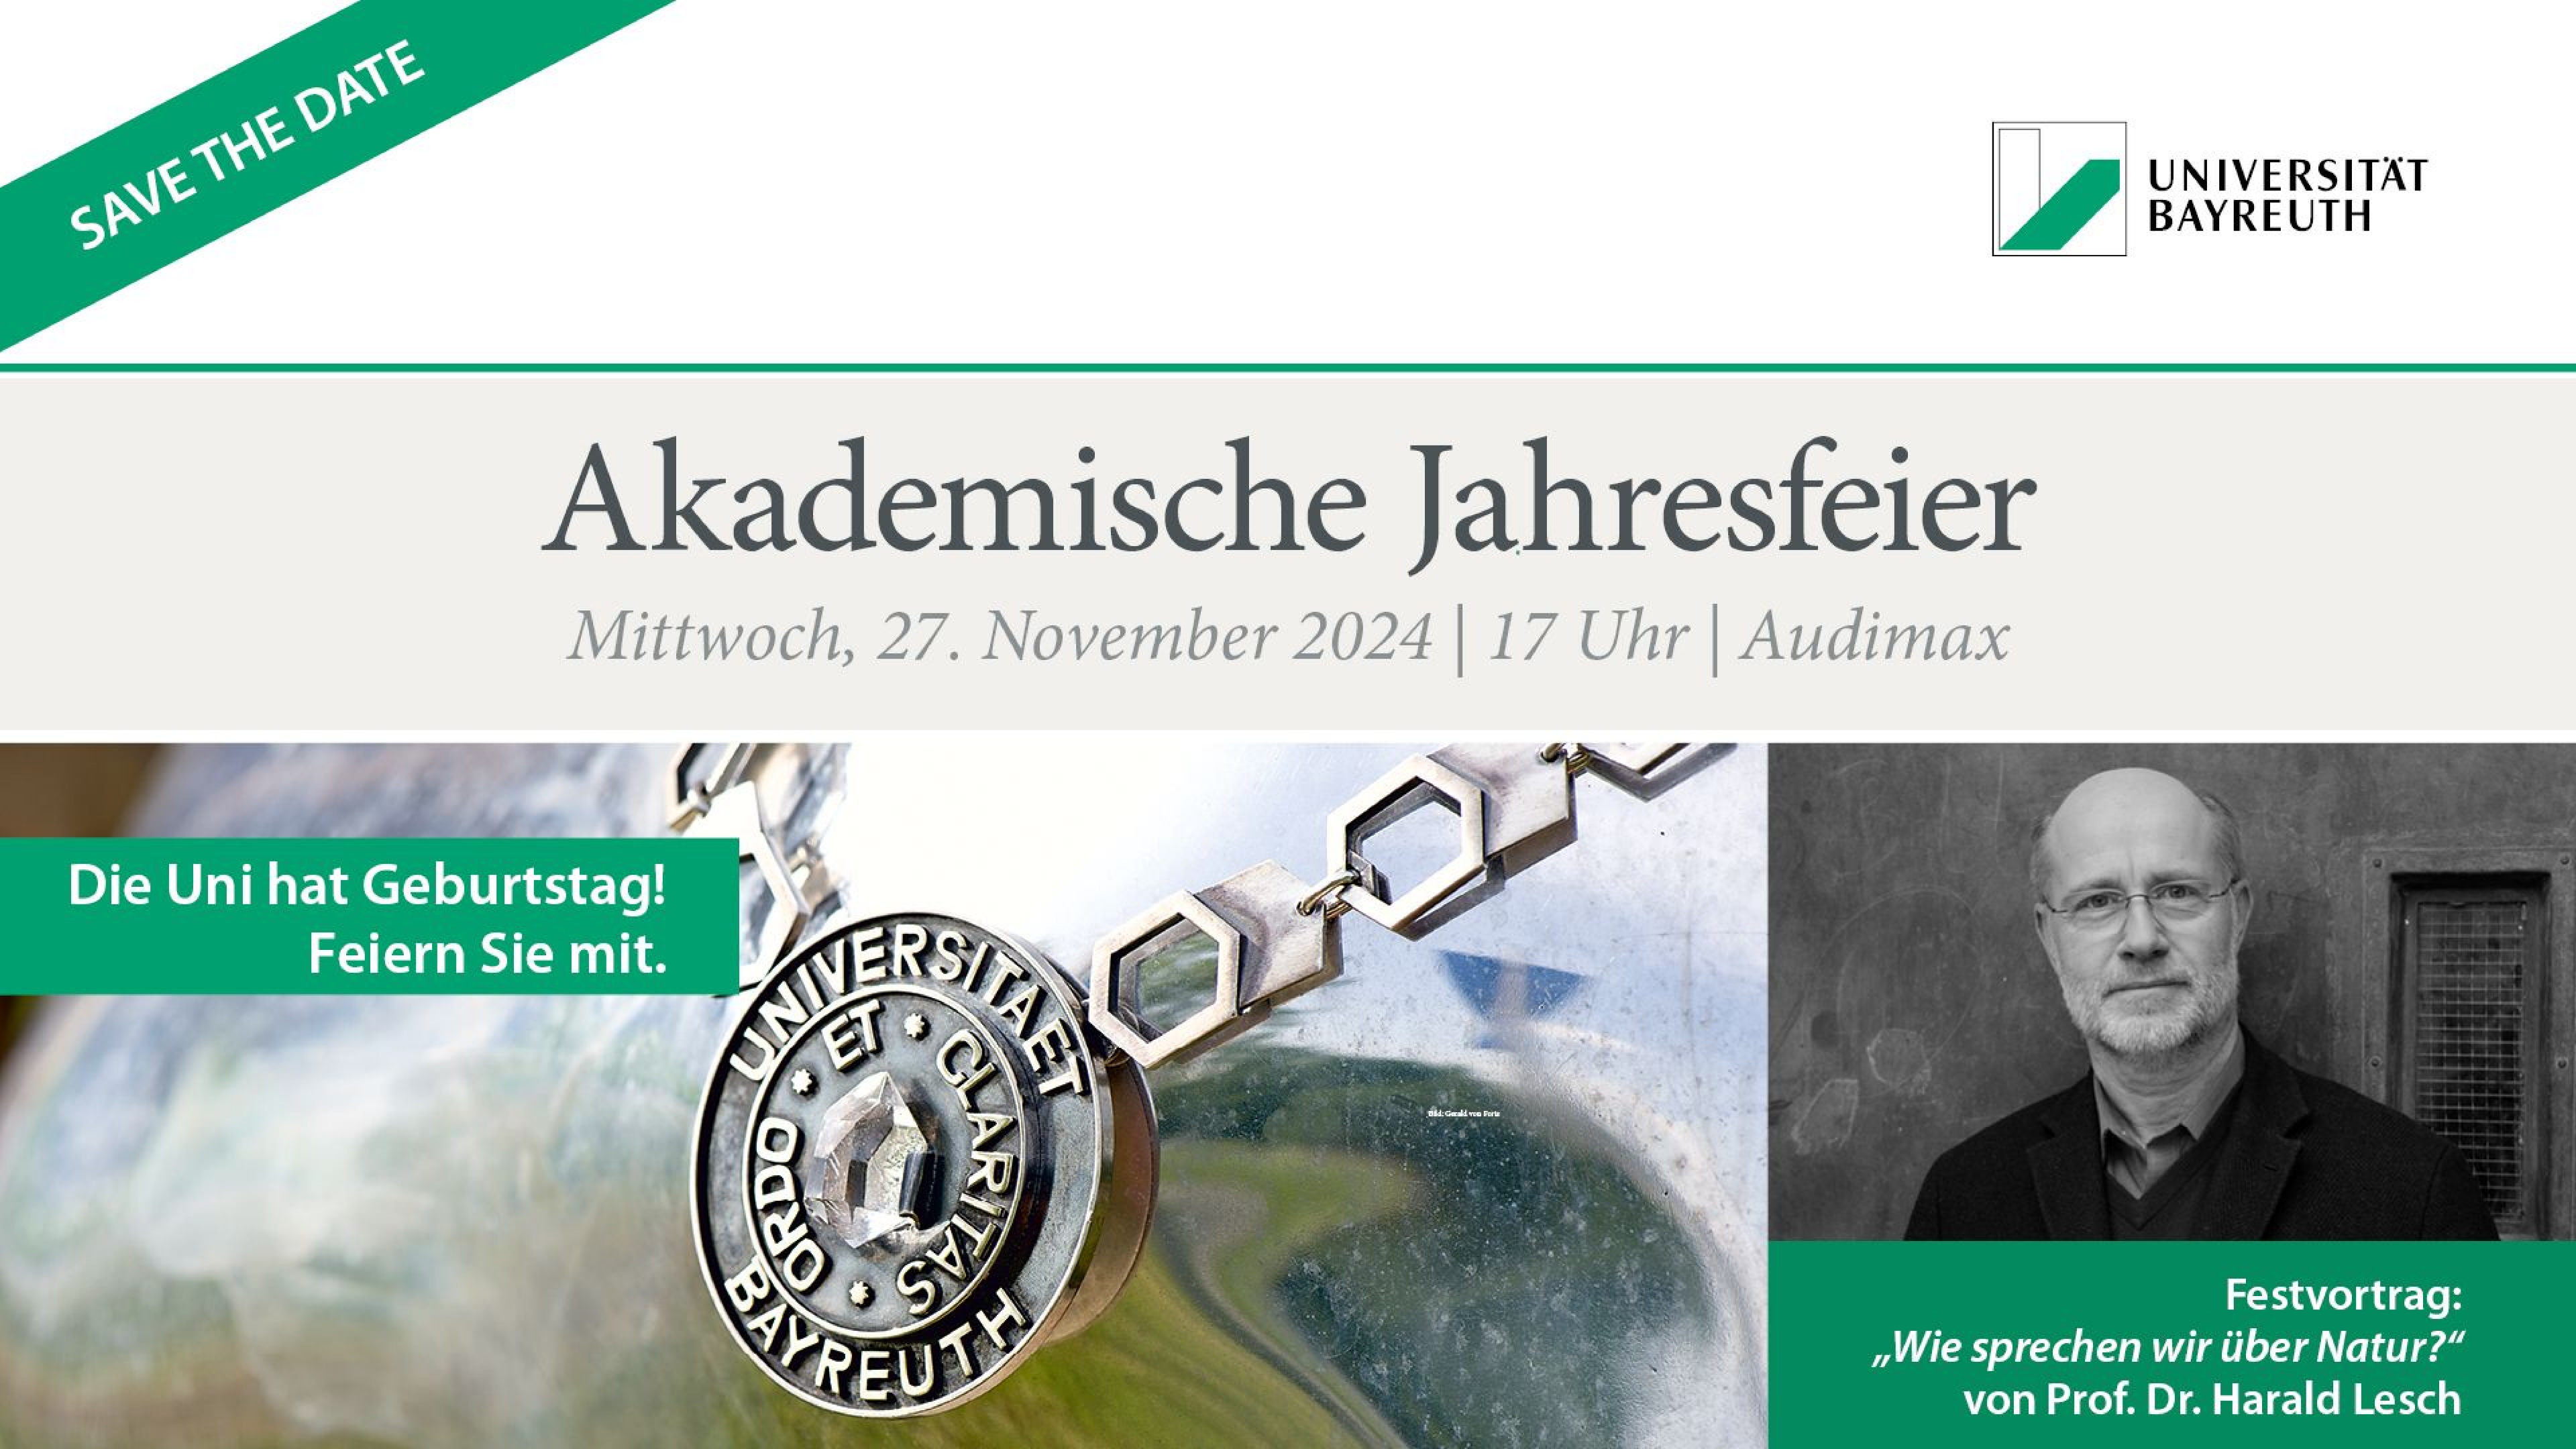 Akademische Jahresfeier am 27. November 2024: Festvortrag mit Prof. Dr. Harald Lesch